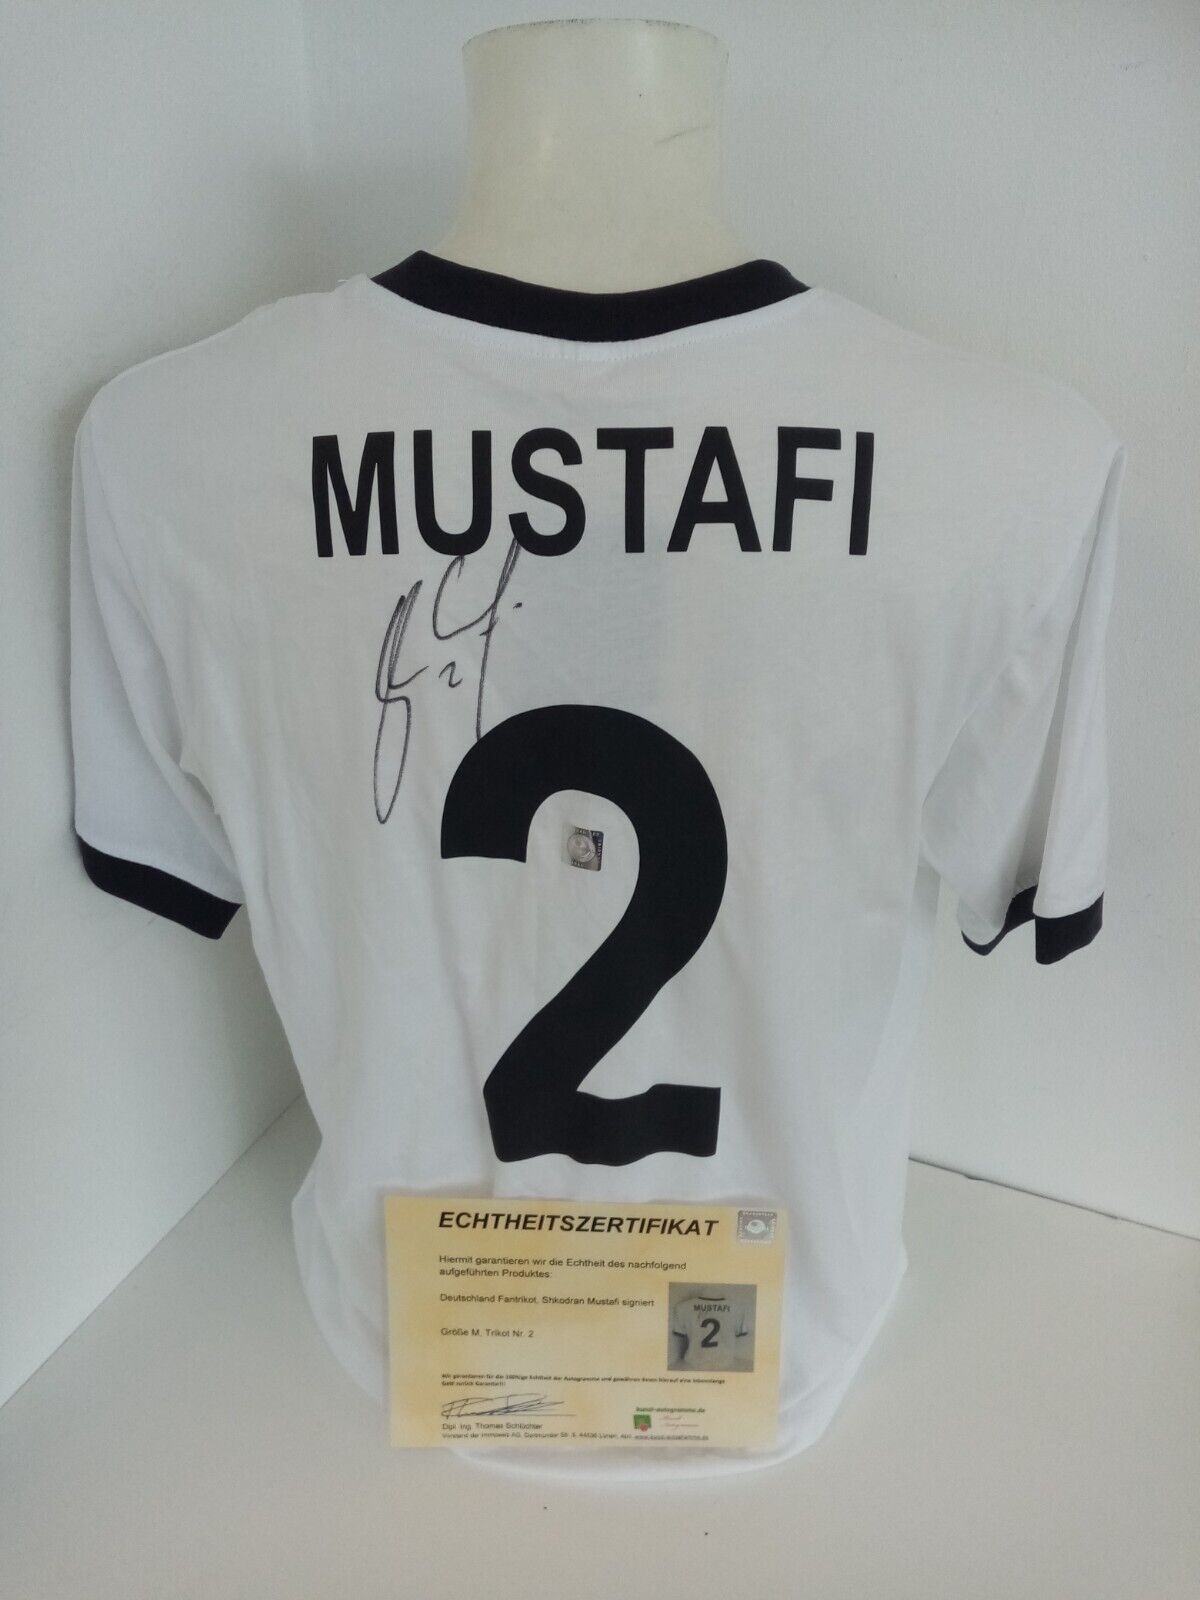 Germany Fan Jersey Mustafi Signed DFB Football Jersey New Autograph Shirt M